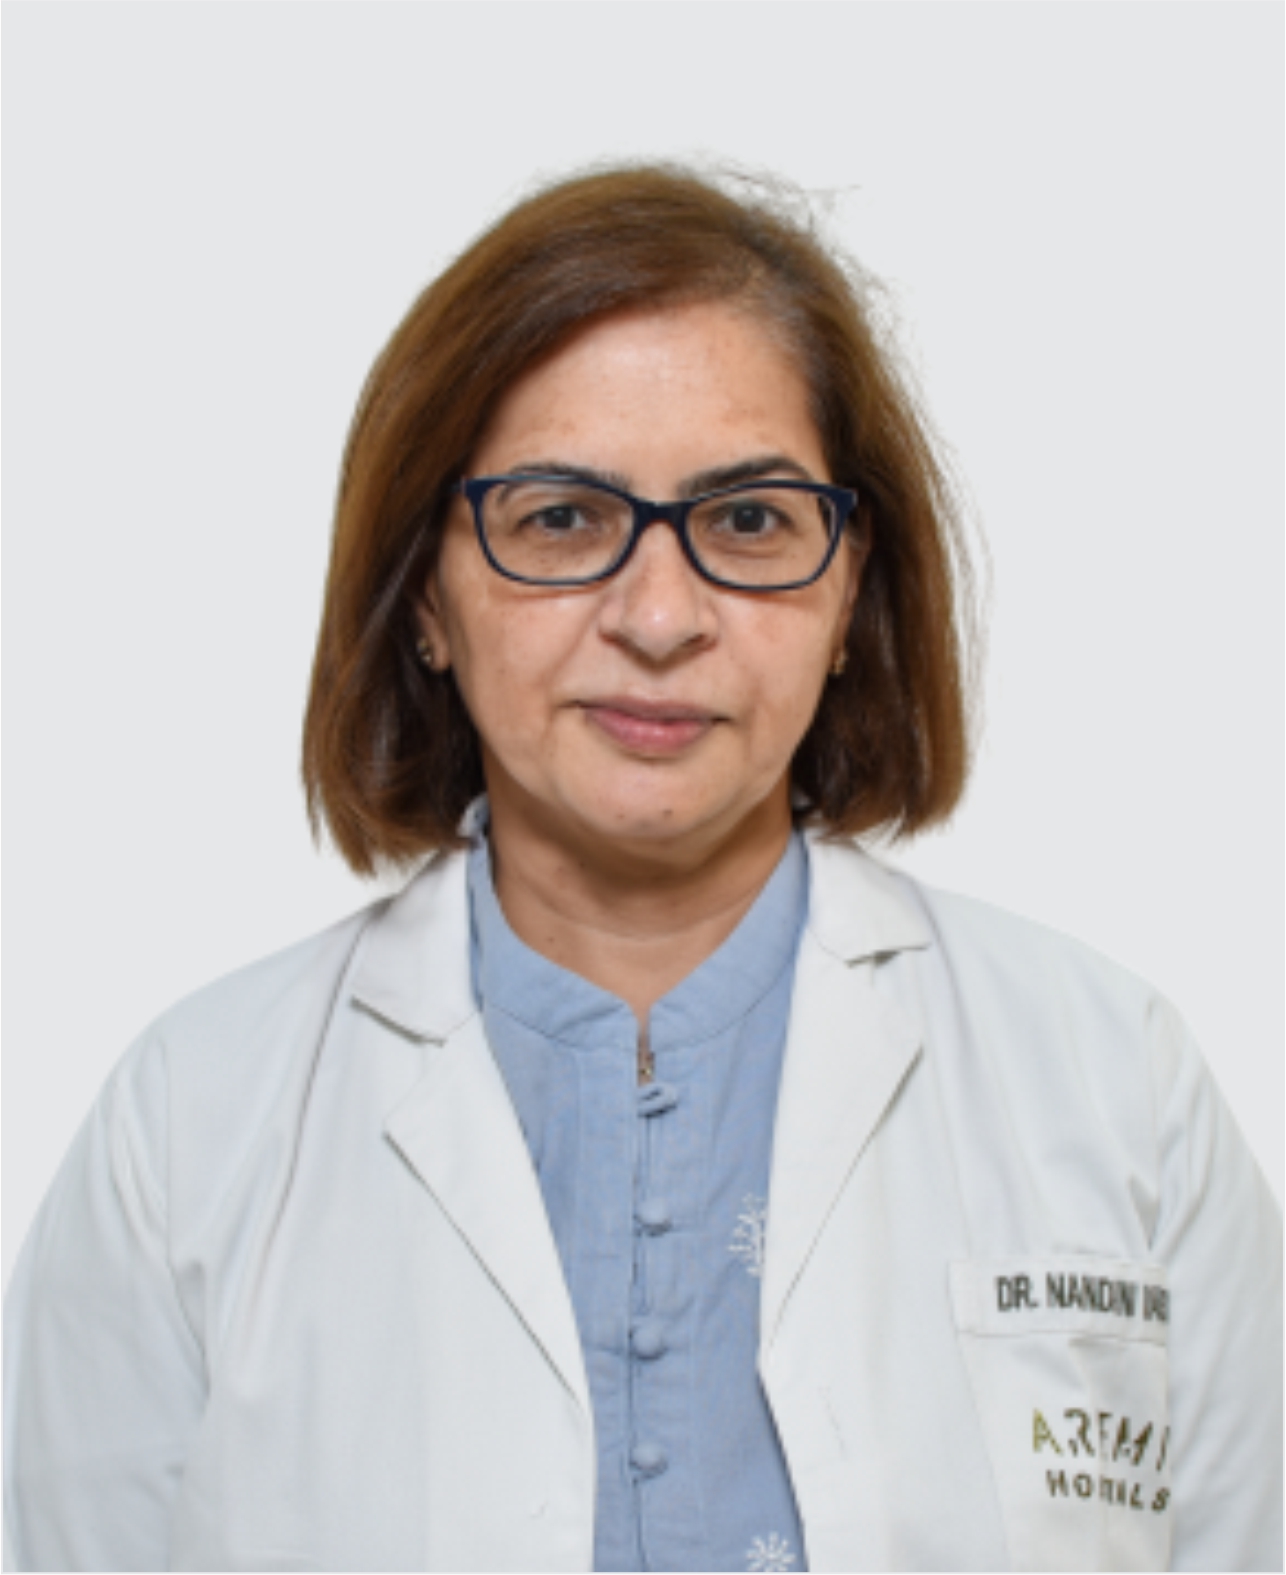 Dr. Nandini Vasdev